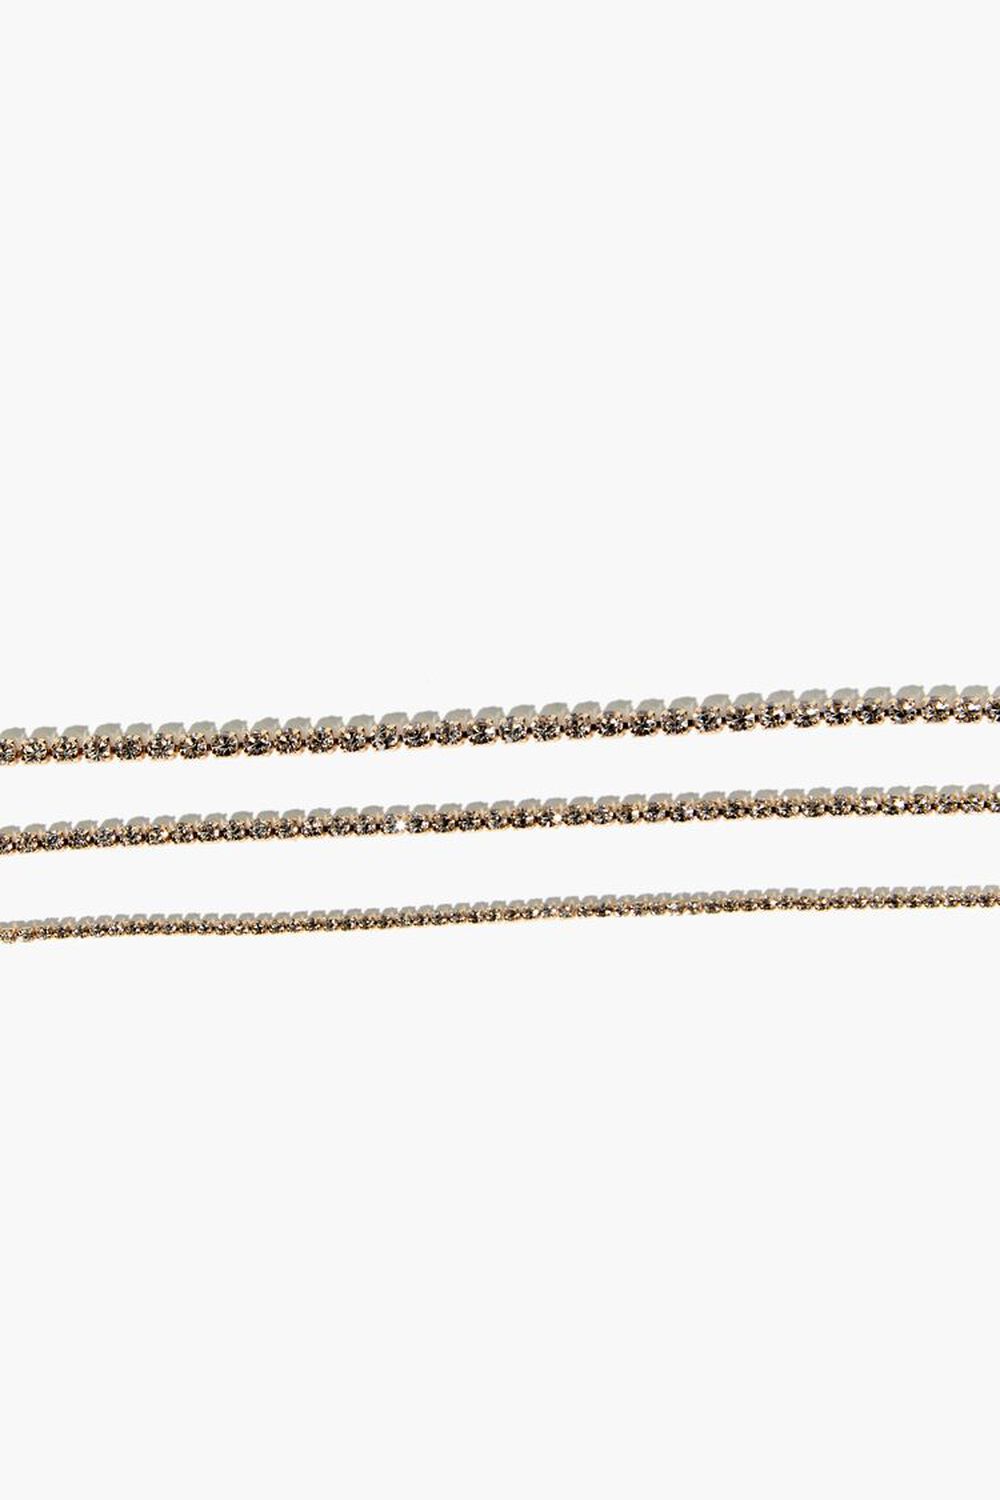 GOLD Rhinestone Chain Bracelet Set, image 2